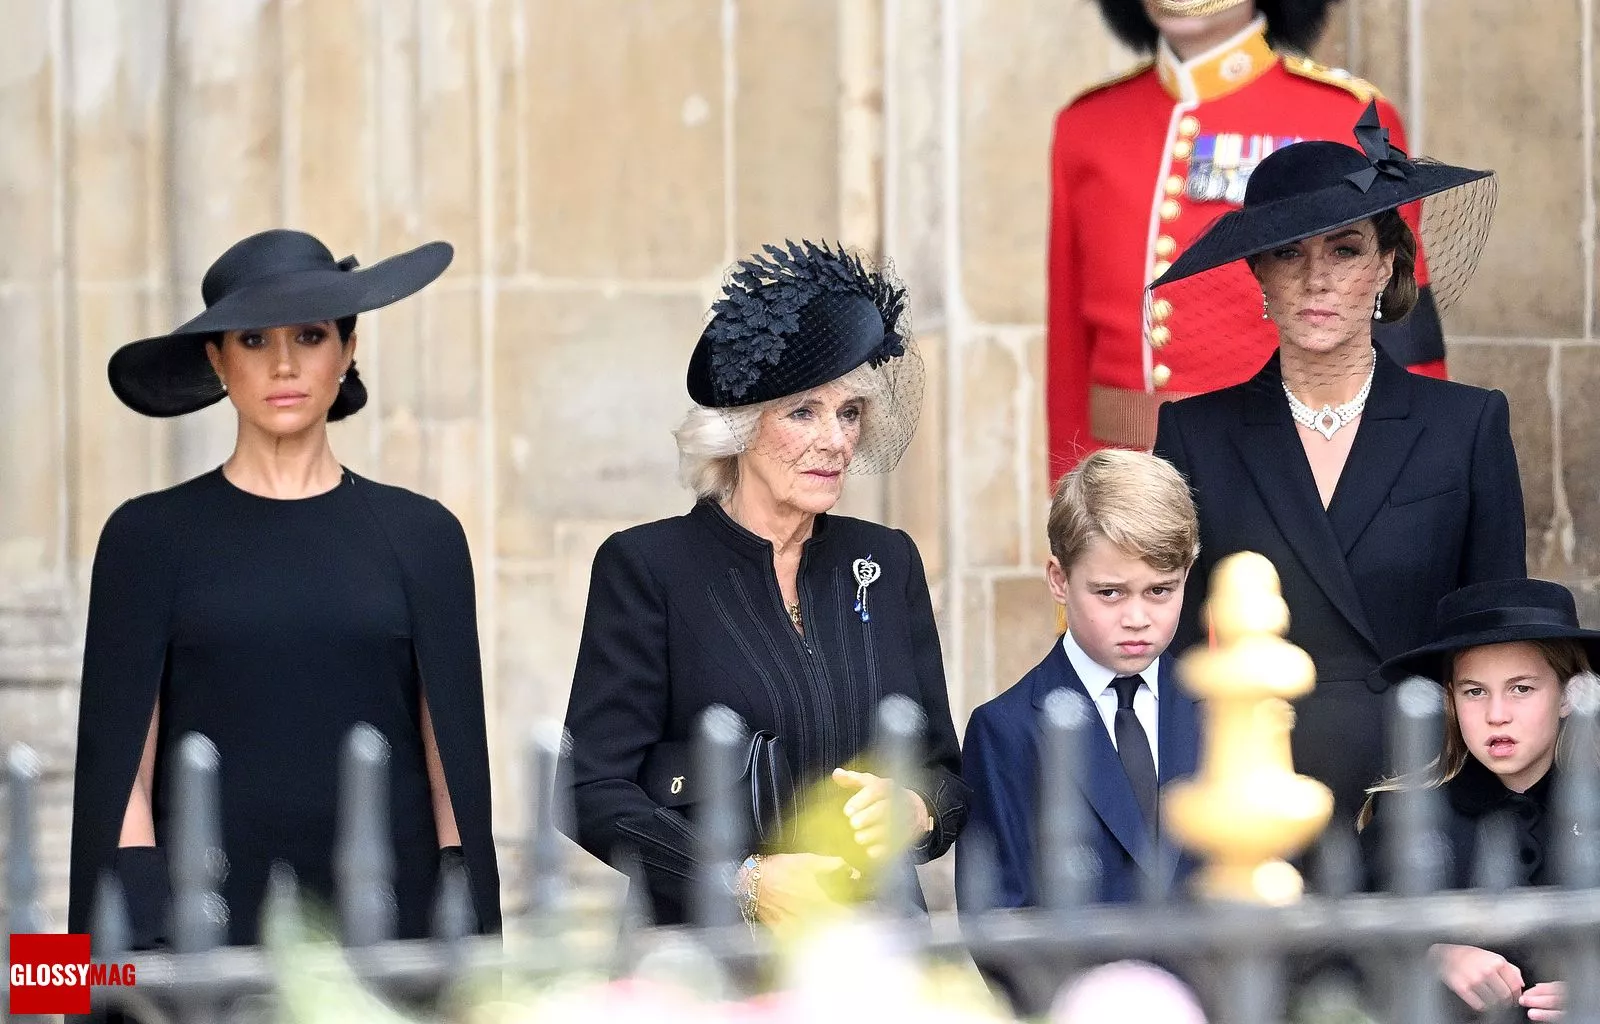 Кейт Миддлтон, Меган Маркл, принц Джордж и королева-консорт Камилла на похоронах королевы Елизаветы II, 19 сентября 2022 г.